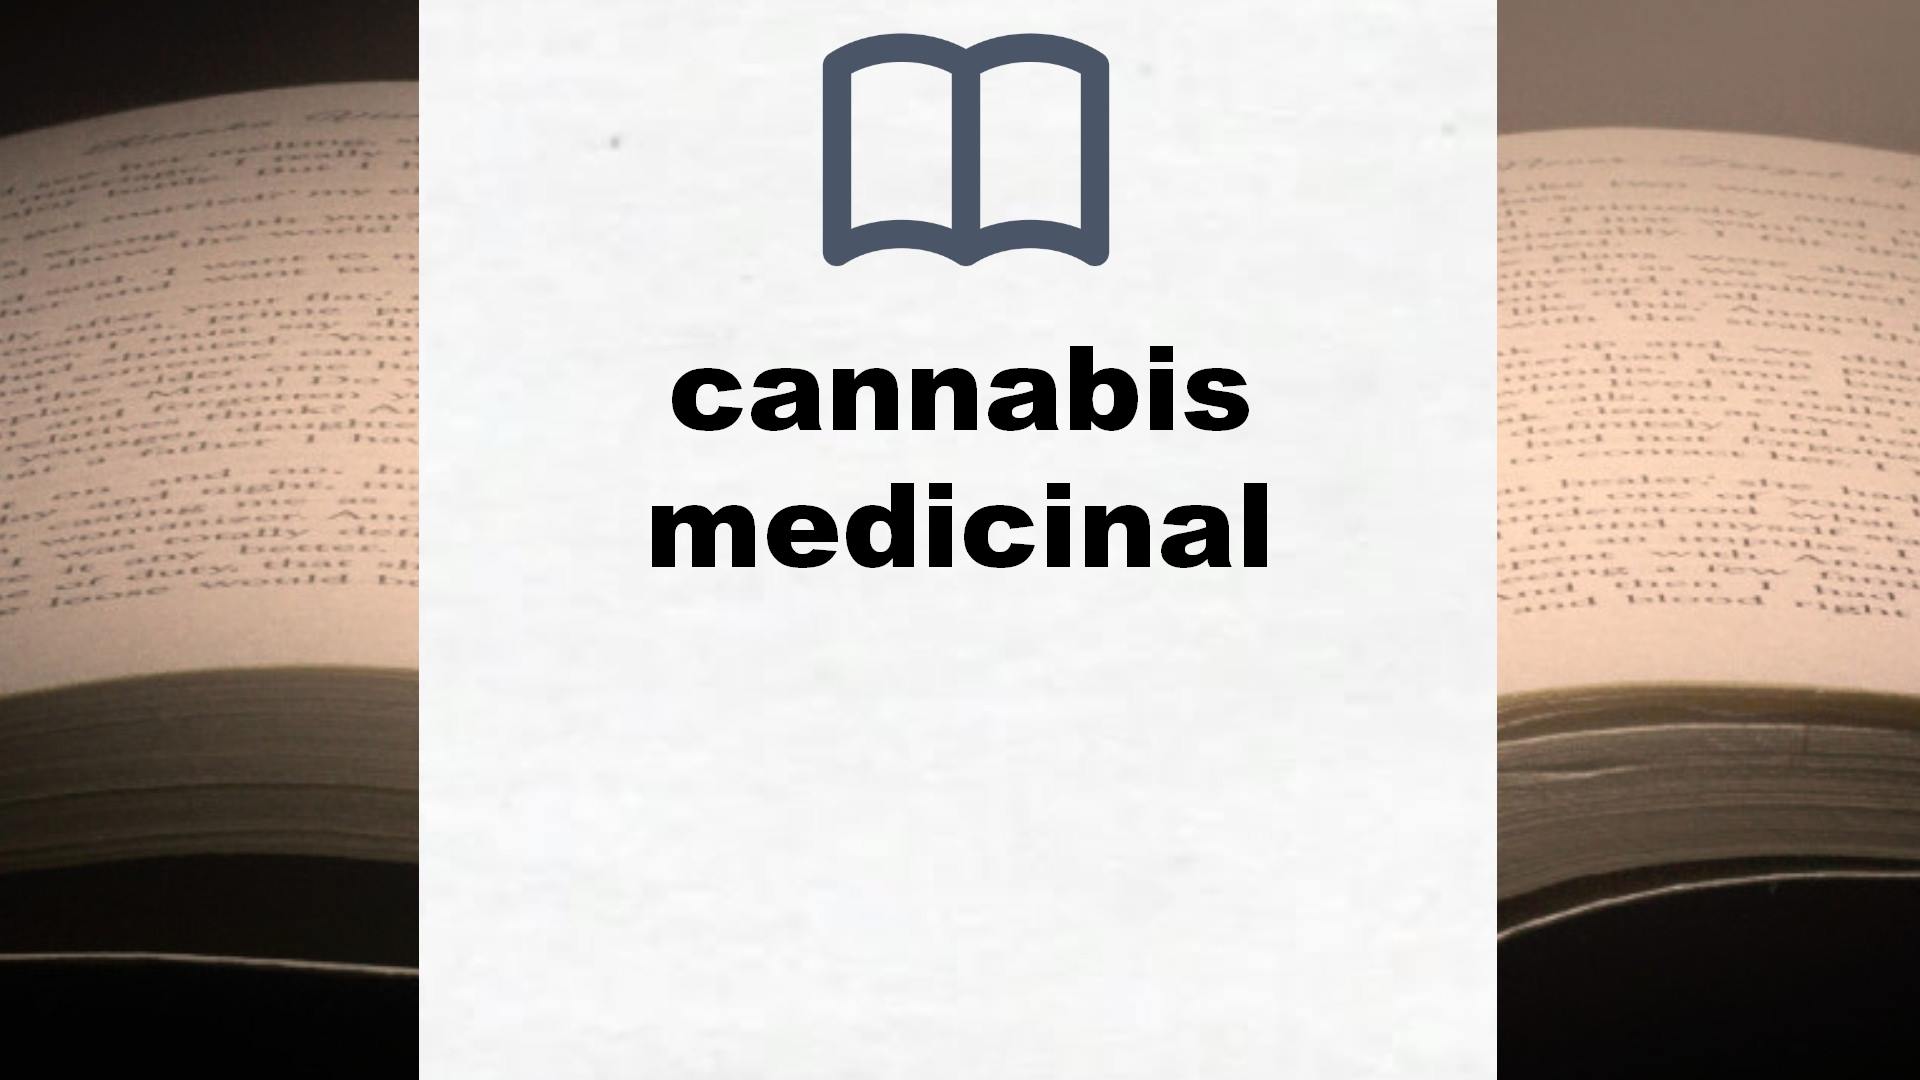 Libros sobre cannabis medicinal